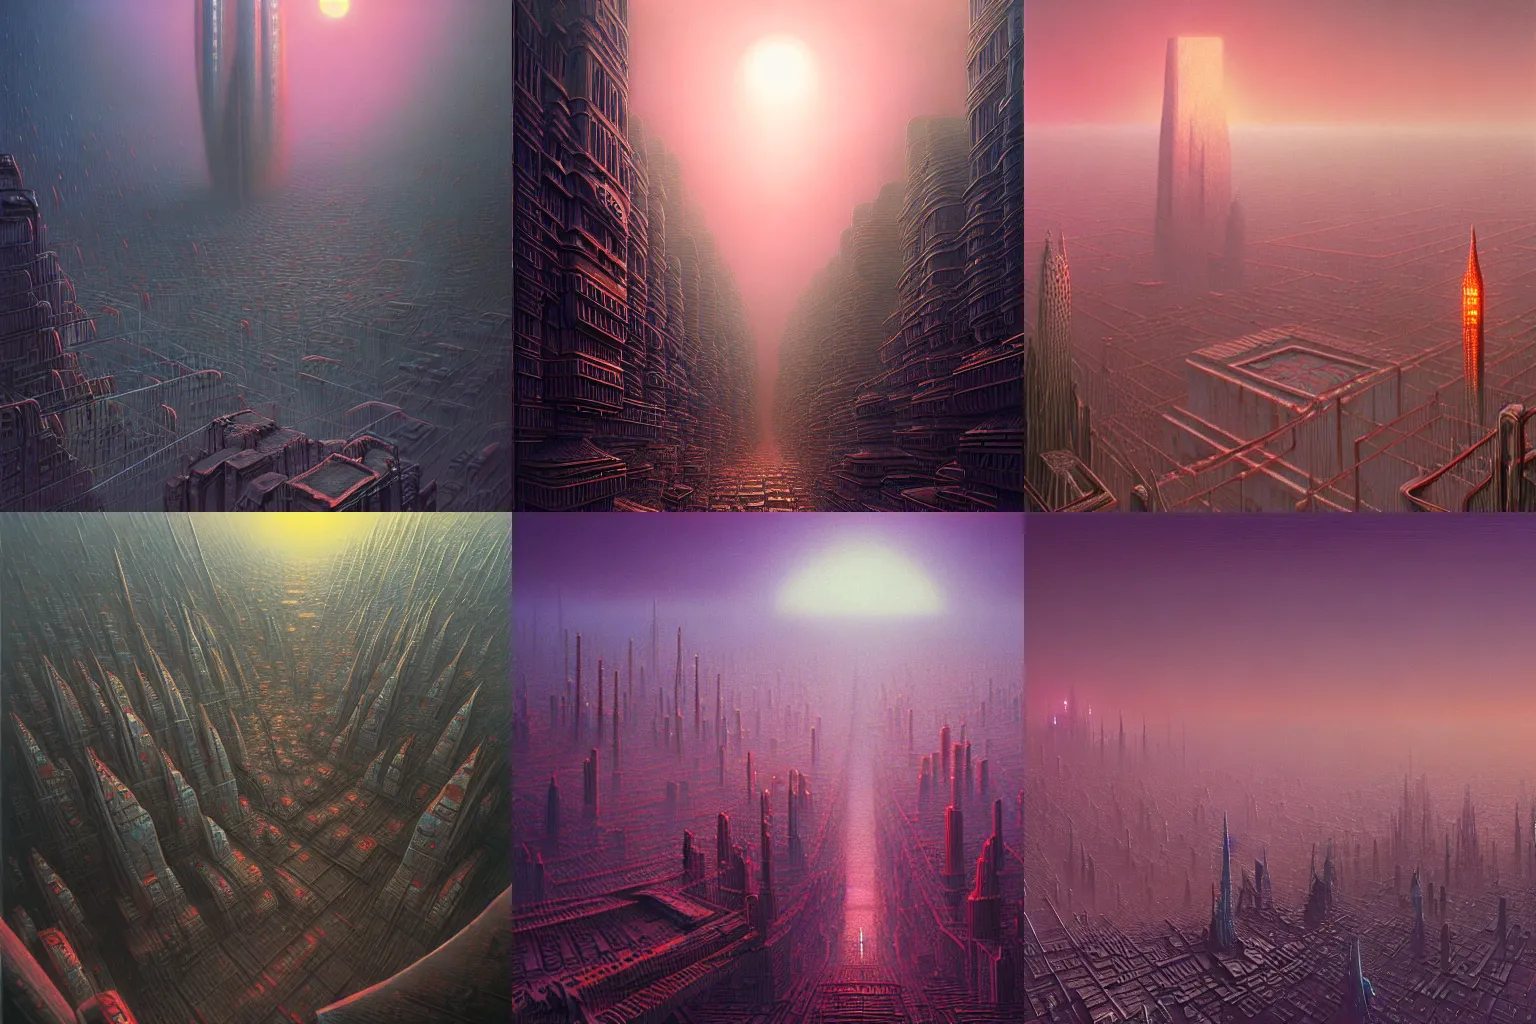 Prompt: detailed, sharp, an alien cityscape by Zdzislaw Beksinski, by Paul Lehr, digital art, illustration, trending on artstation, HD, 8K, highly detailed, good lighting, beautiful, epic